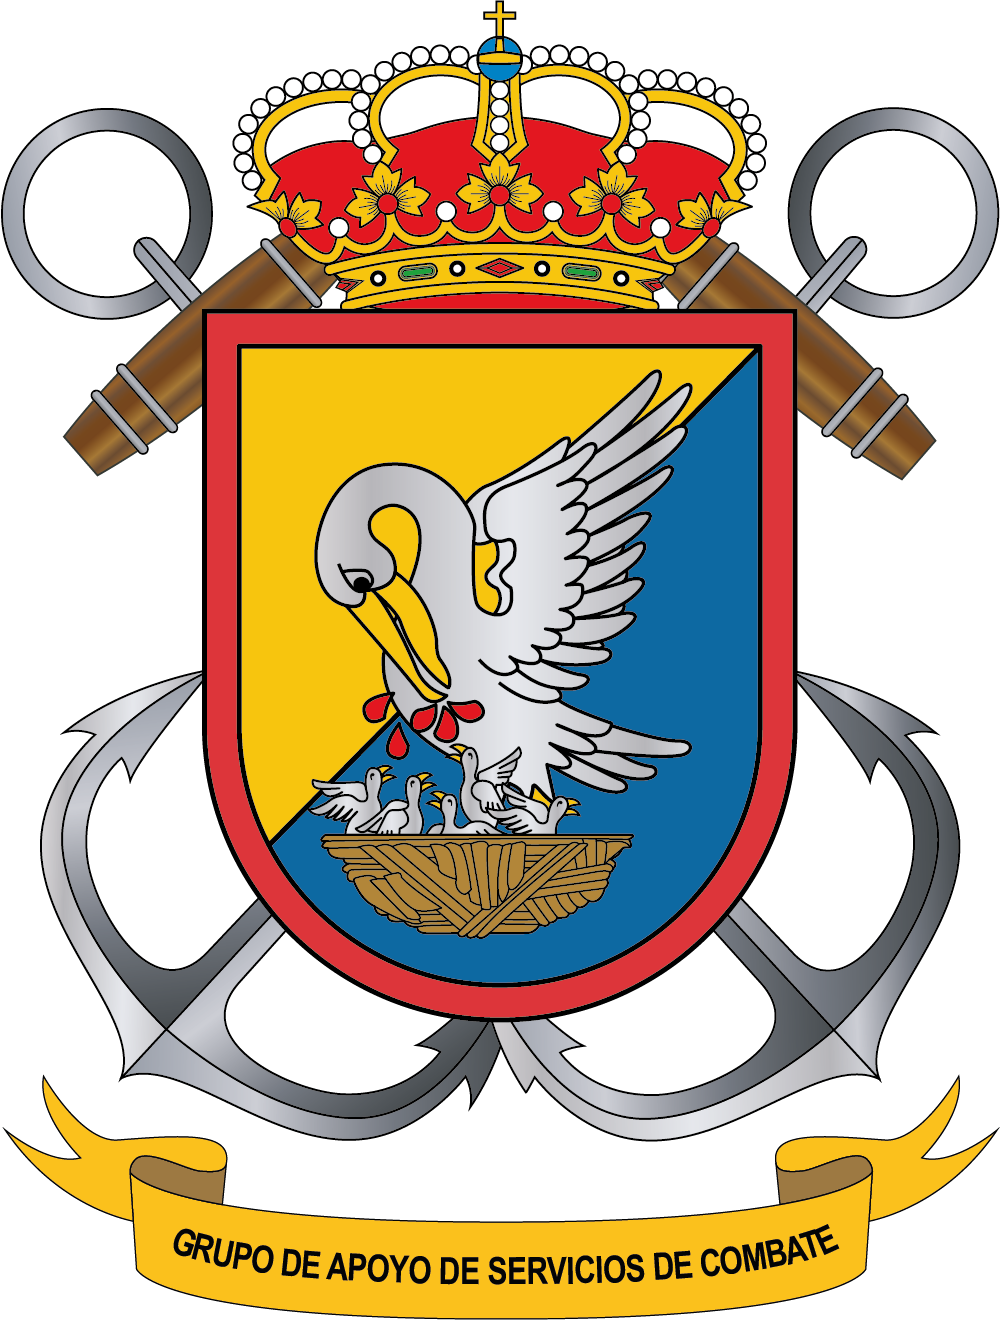 Escudo del Grupo de Apoyo de Servicio de Combate
